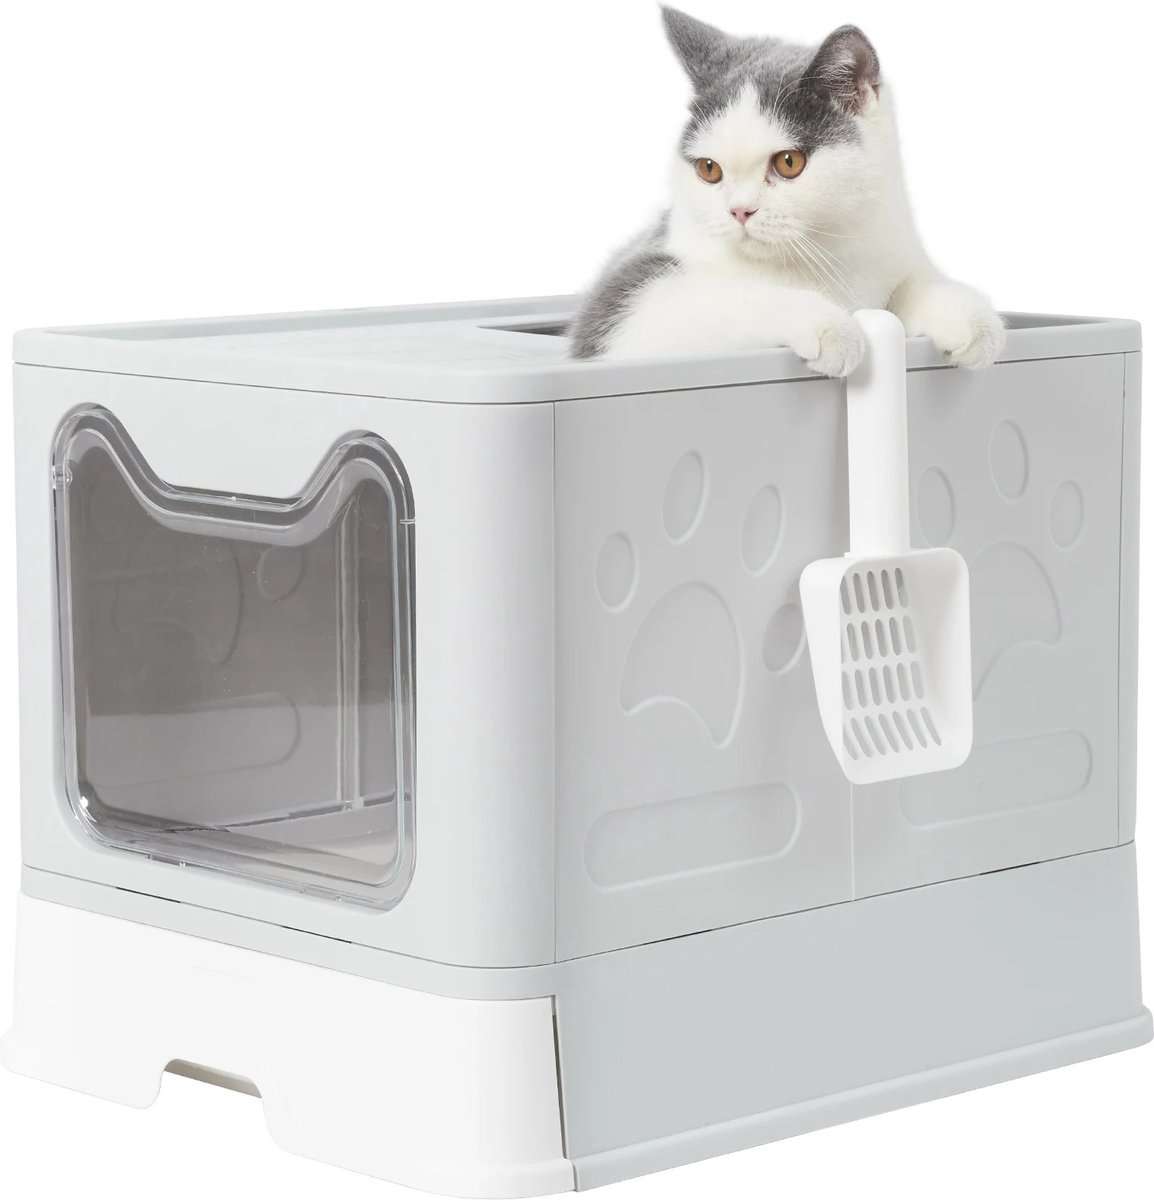 Mima® Kattenbak- Opvouwbaar- Kattenbak voor Reizen- Kattenbakken-Kattentoilet- Wit/Grijs- Met Schep